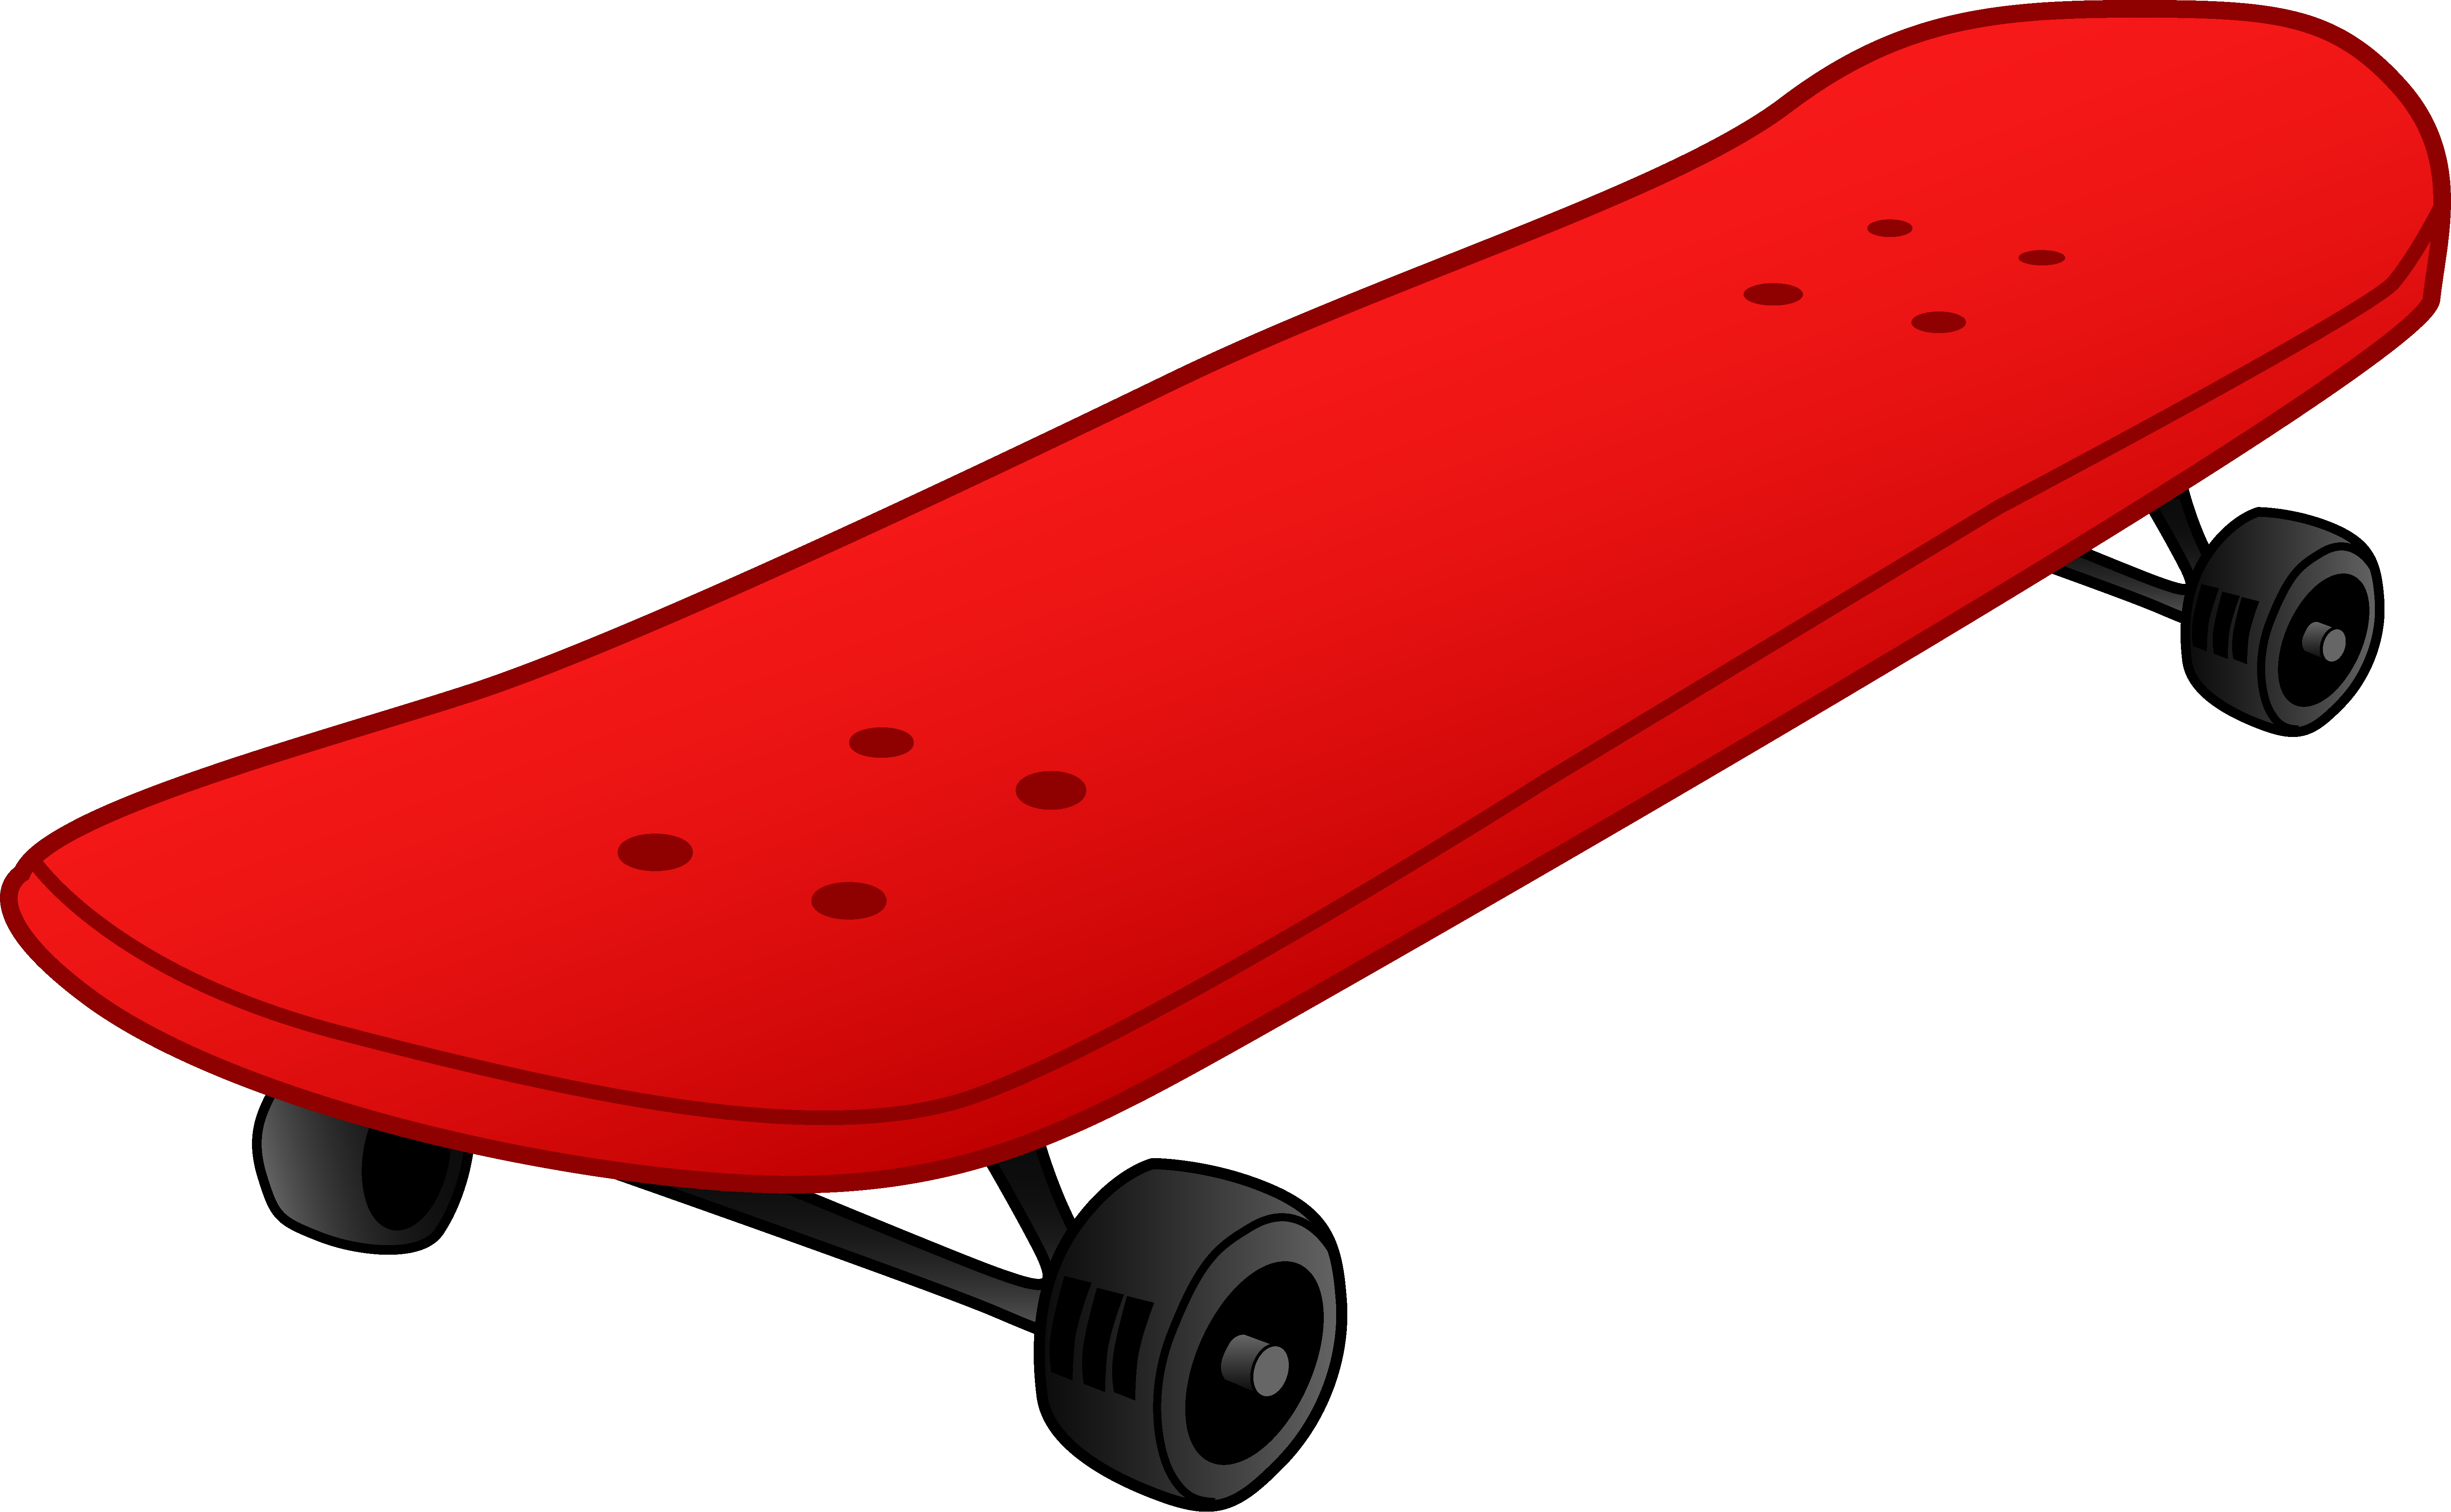 Skateboard Cartoon - ClipArt Best